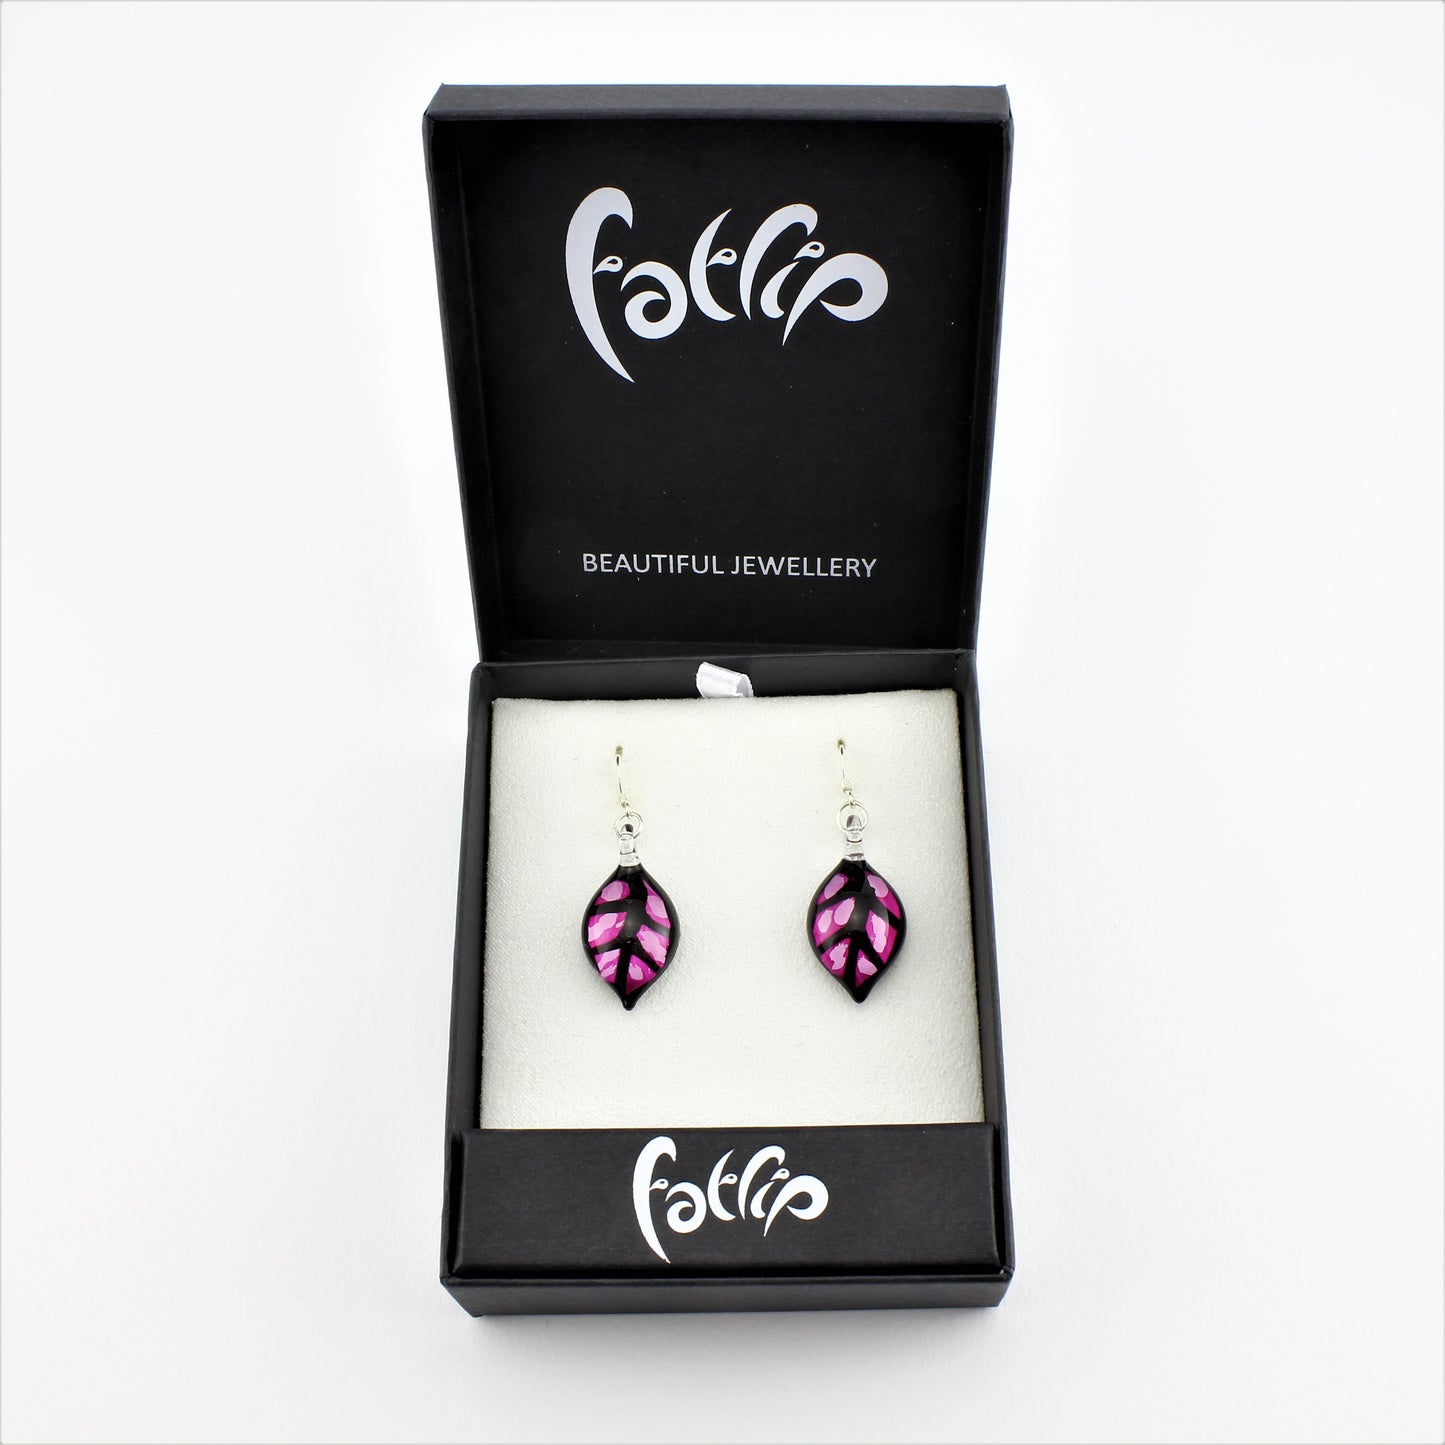 SWE598 - Pink Leaf Glass Earrings